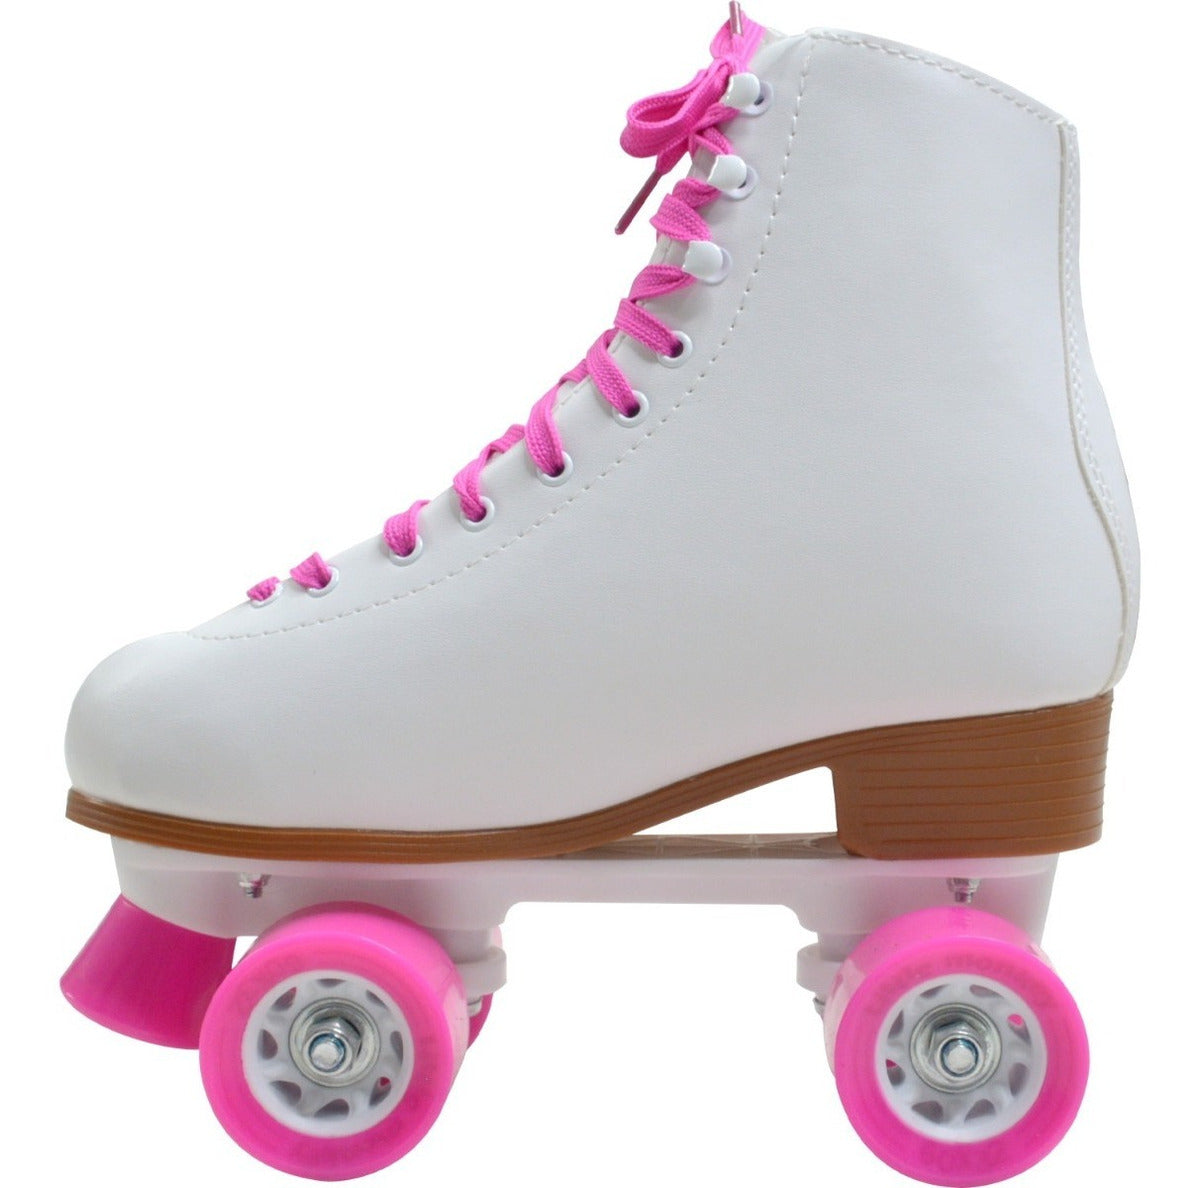  Patines de ruedas para adultos, de caña alta, morado, verde,  azul, rosa, patines profesionales de doble fila para damas, patines  clásicos de cuatro ruedas de doble fila con púas de 5.5 